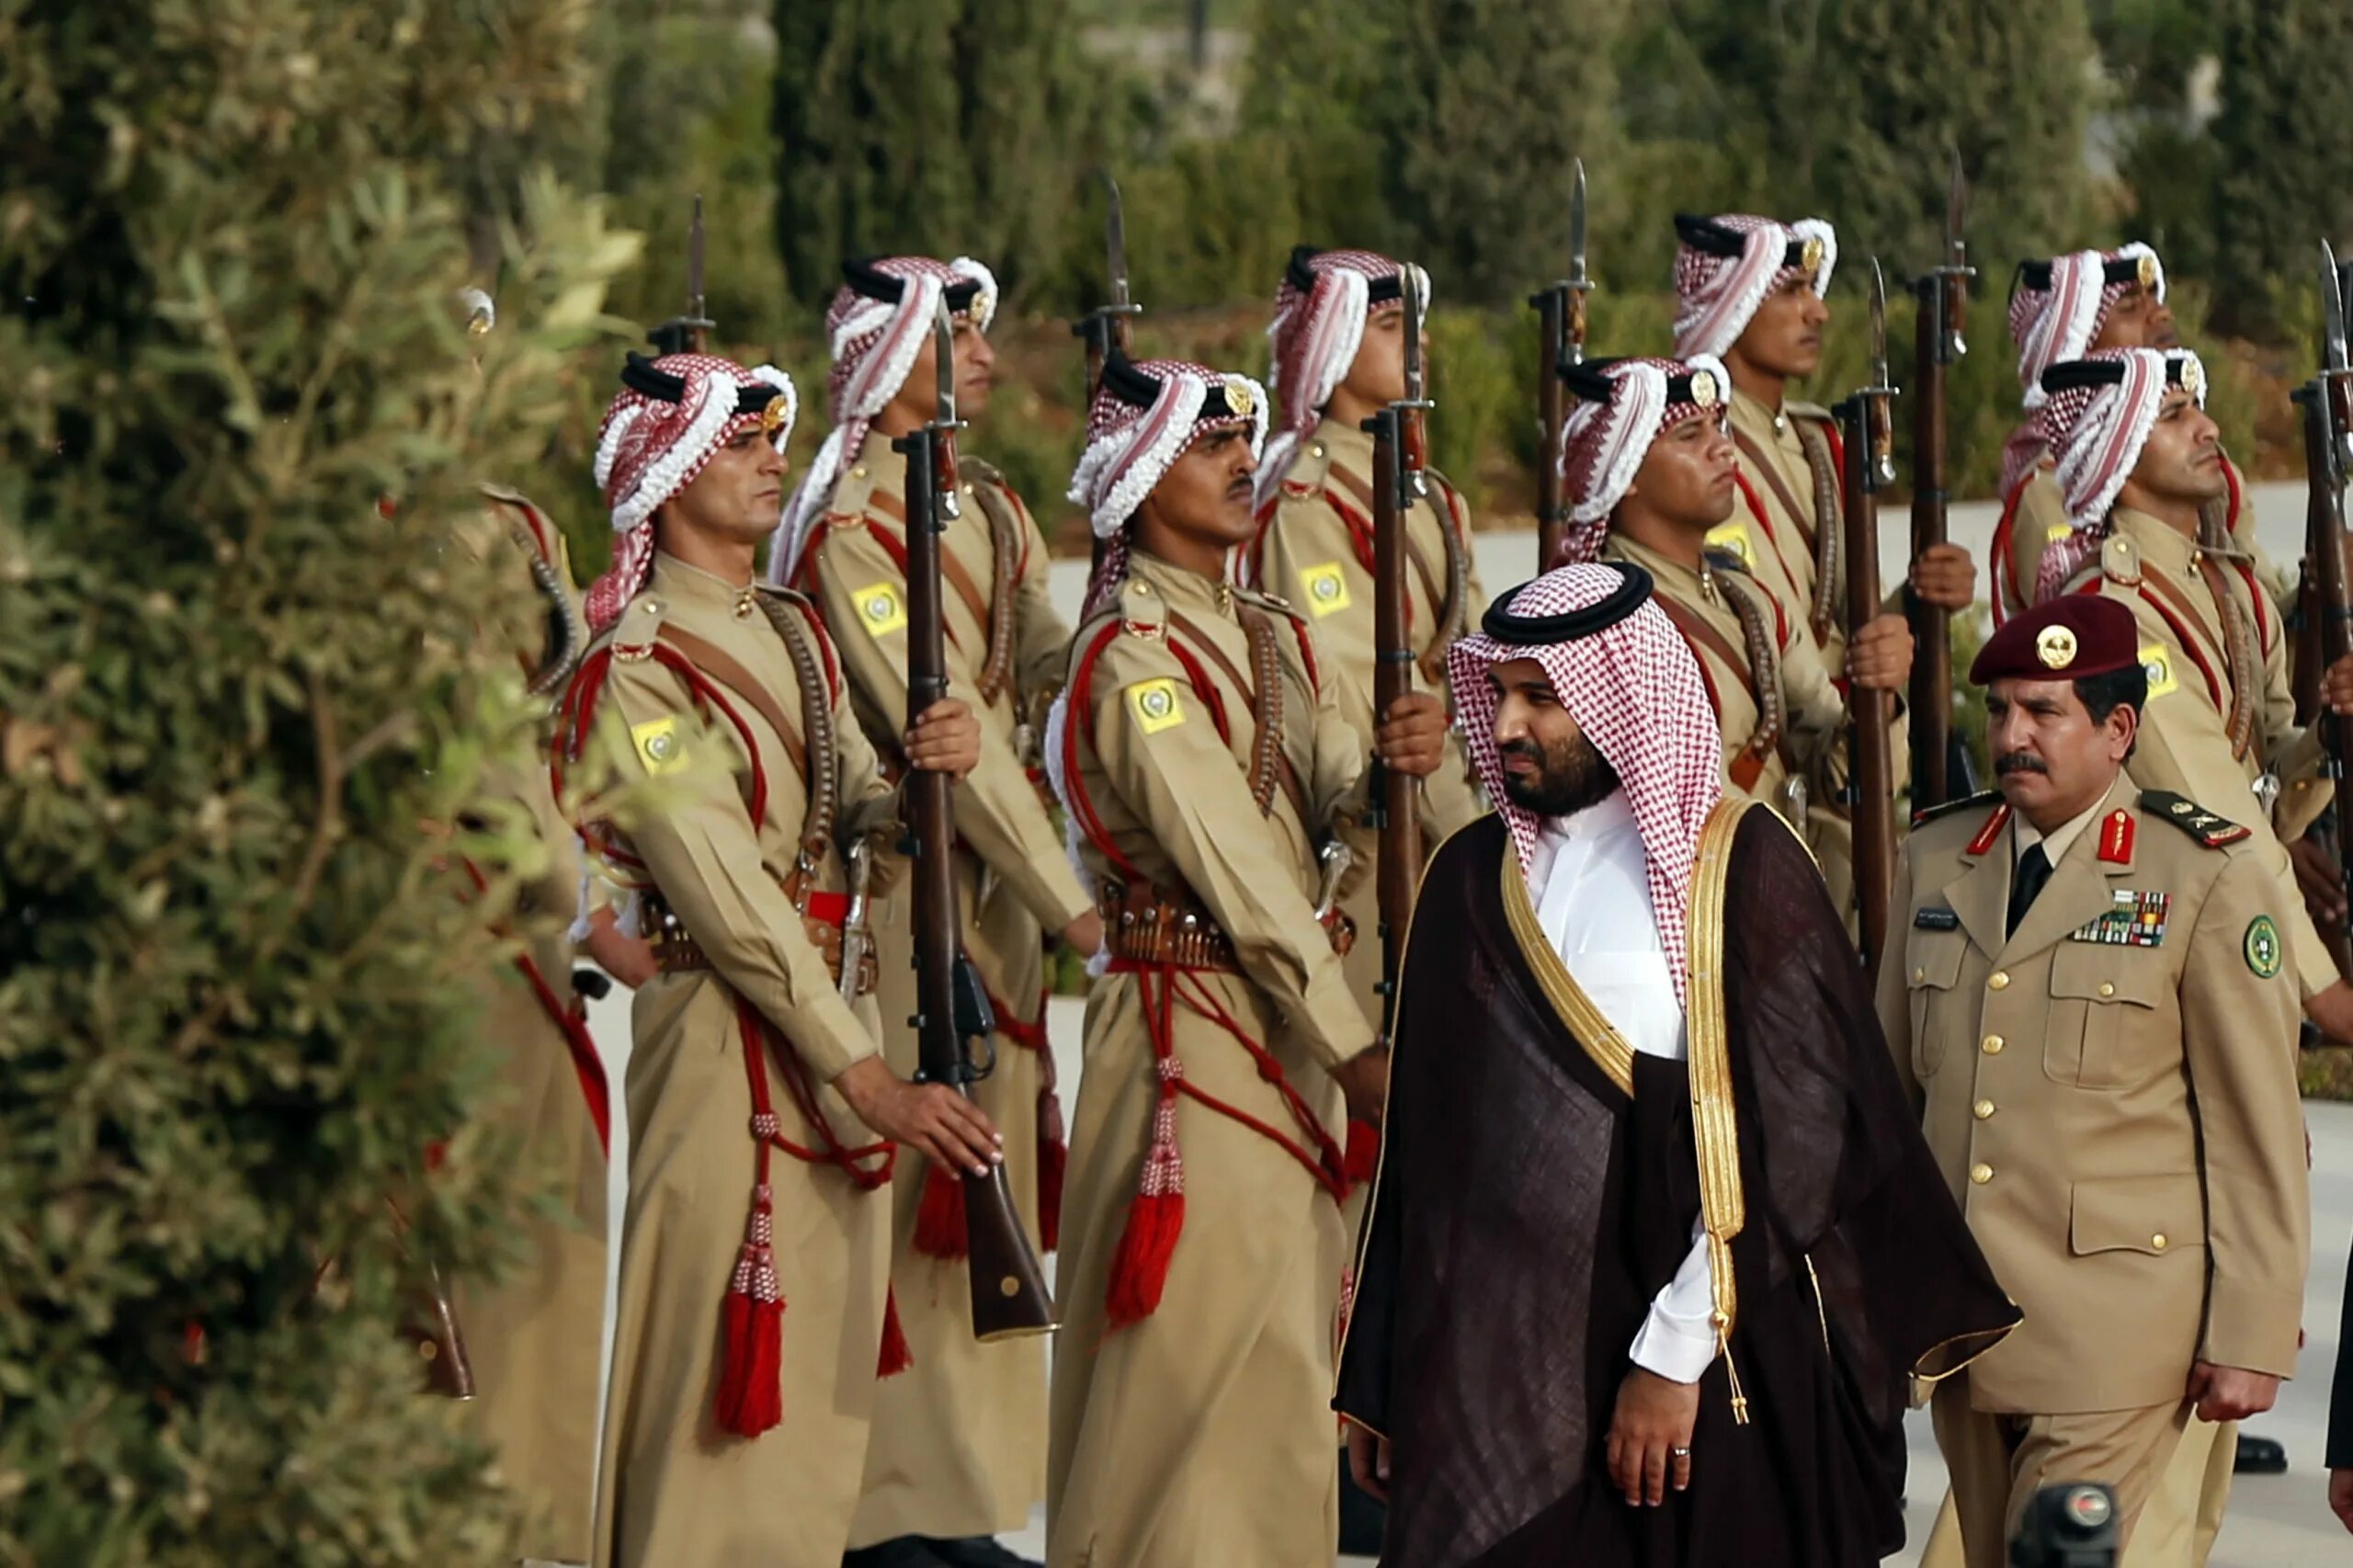 Королевская гвардия Саудовской Аравии. Национальная гвардия Саудовской Аравии. Форма армии Саудовской Аравии. Национальная гвардия короля Саудовской Аравии.